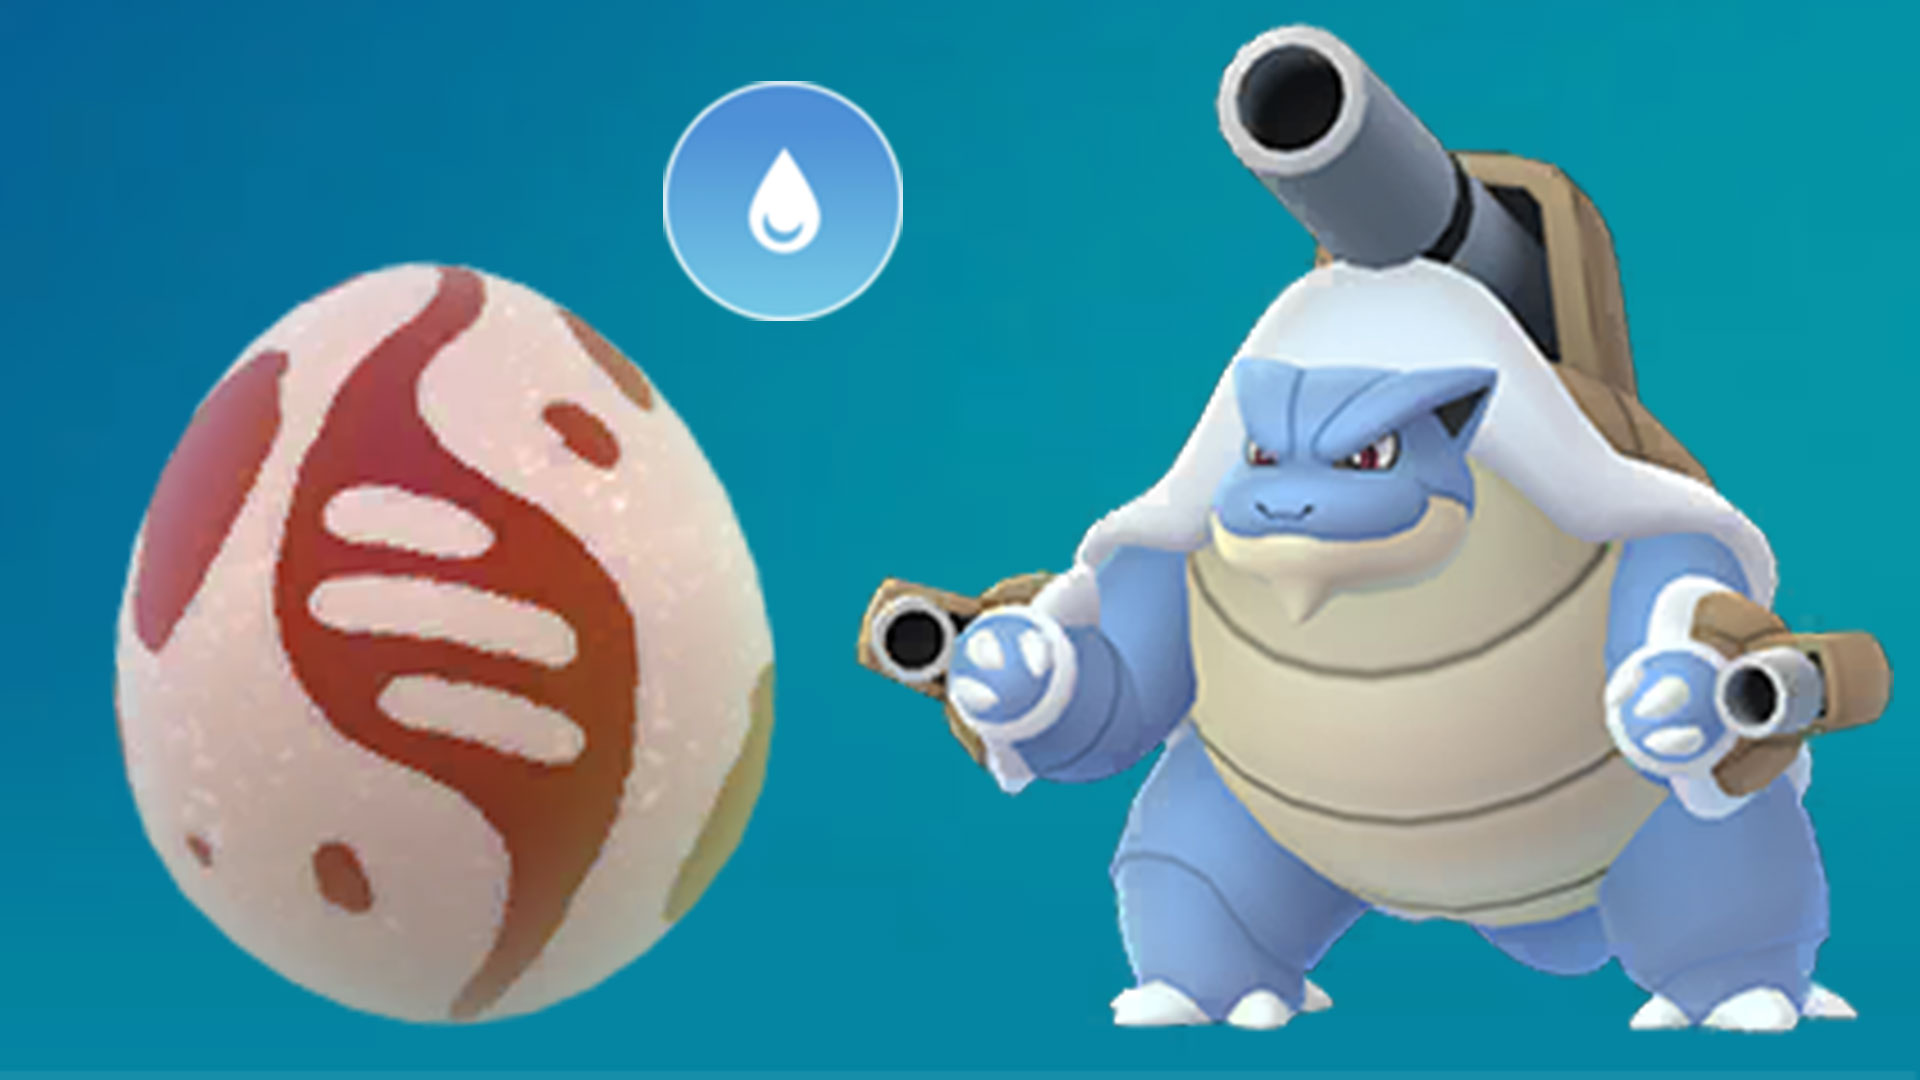 Pokémon GO: Zekrom Raid-Konter – Die besten Monster und Angriffe gegen den  Raid-Boss